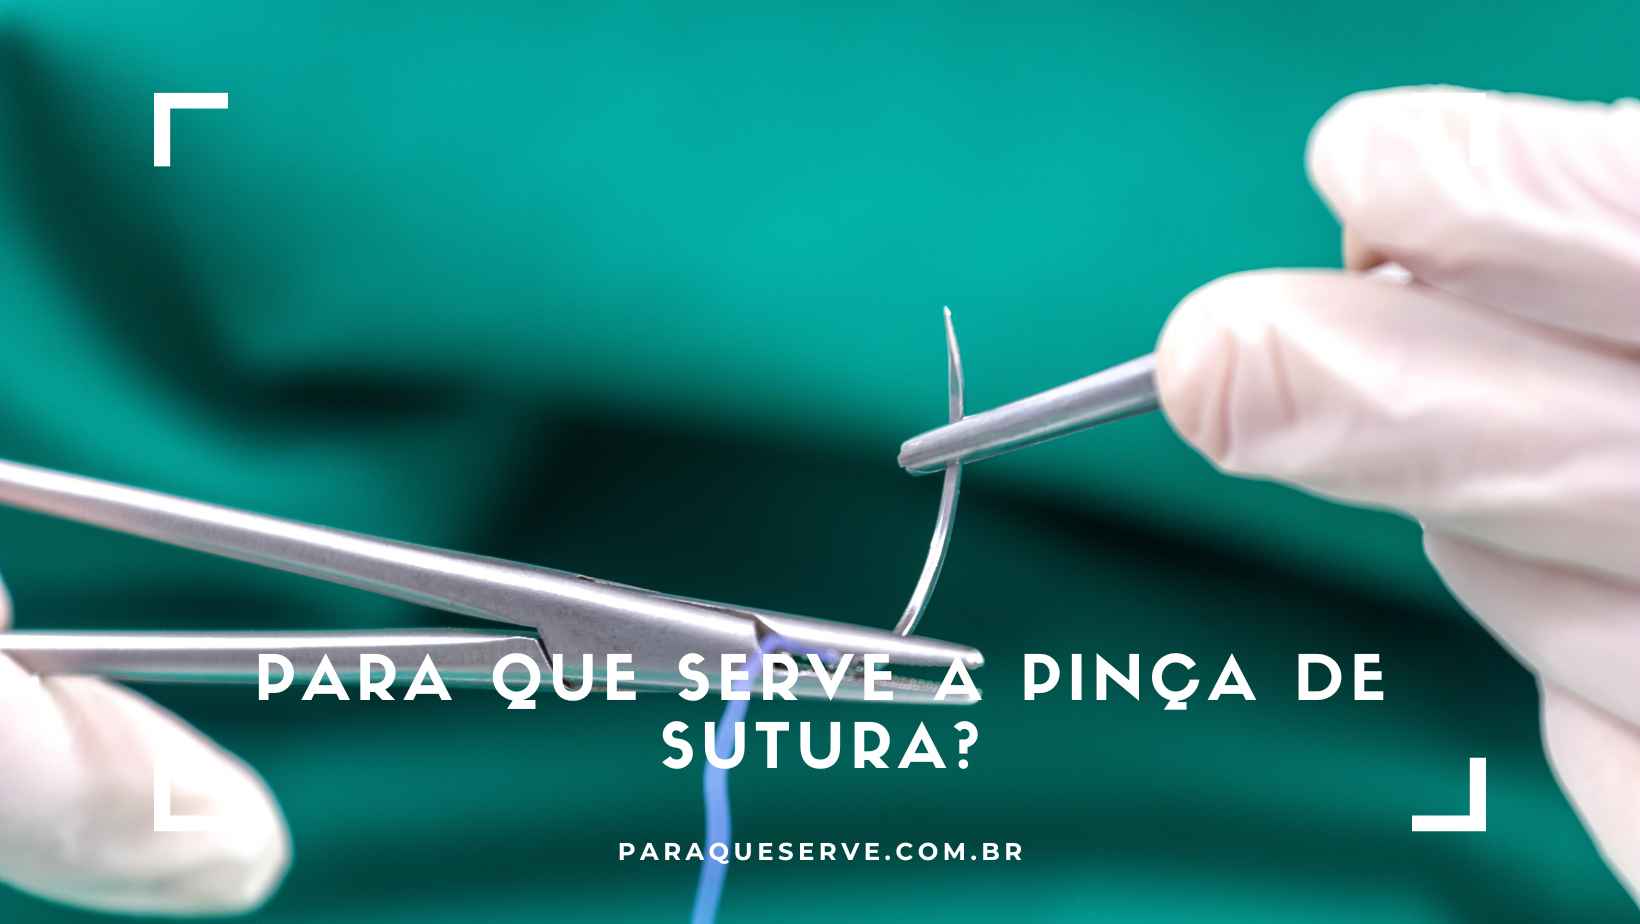 Para que serve a Pinça de sutura?